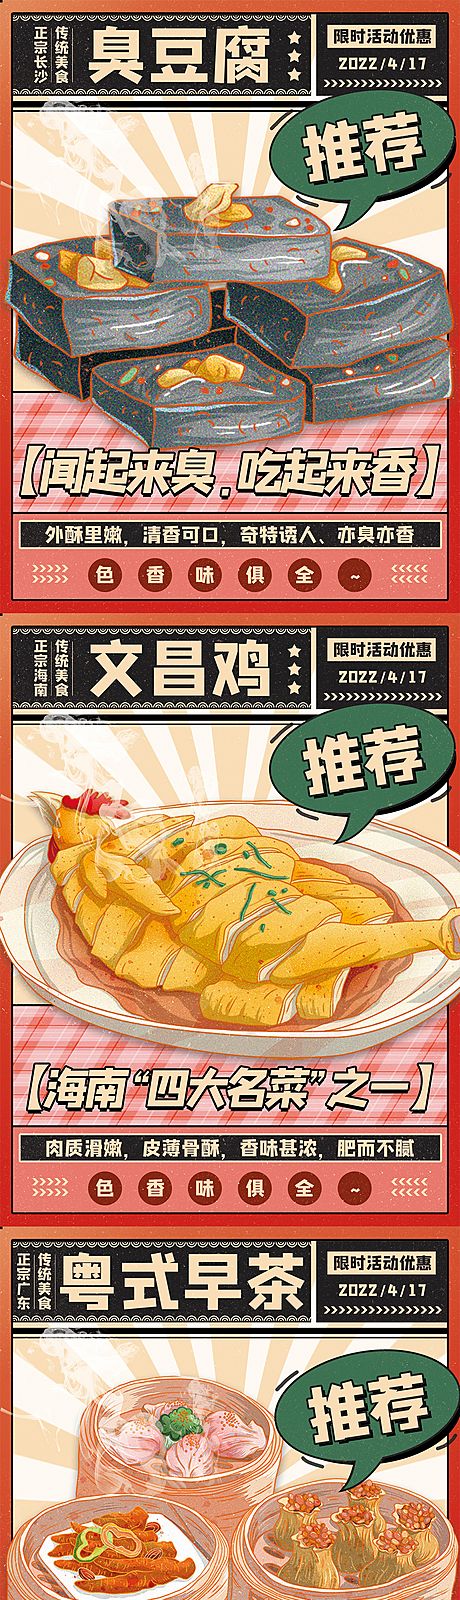 仙图网-美食小吃海报